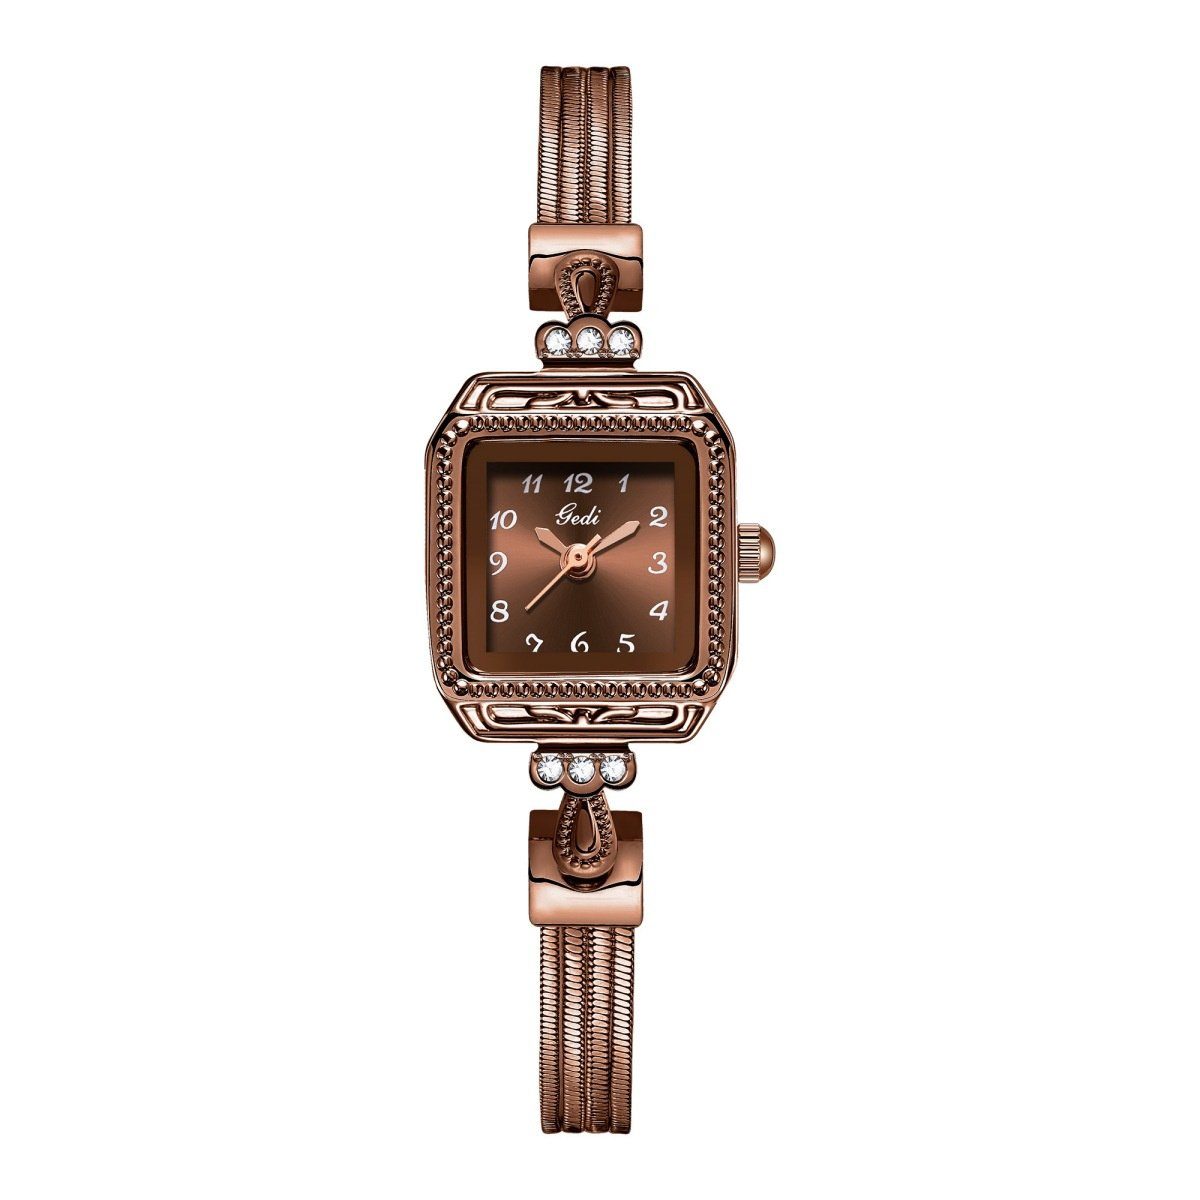 Verkaufsgebot carefully selected Quarzuhr Damen-Uhr mit Braun aus Vintage-Stil im Kupferimitat Schlangenarmband